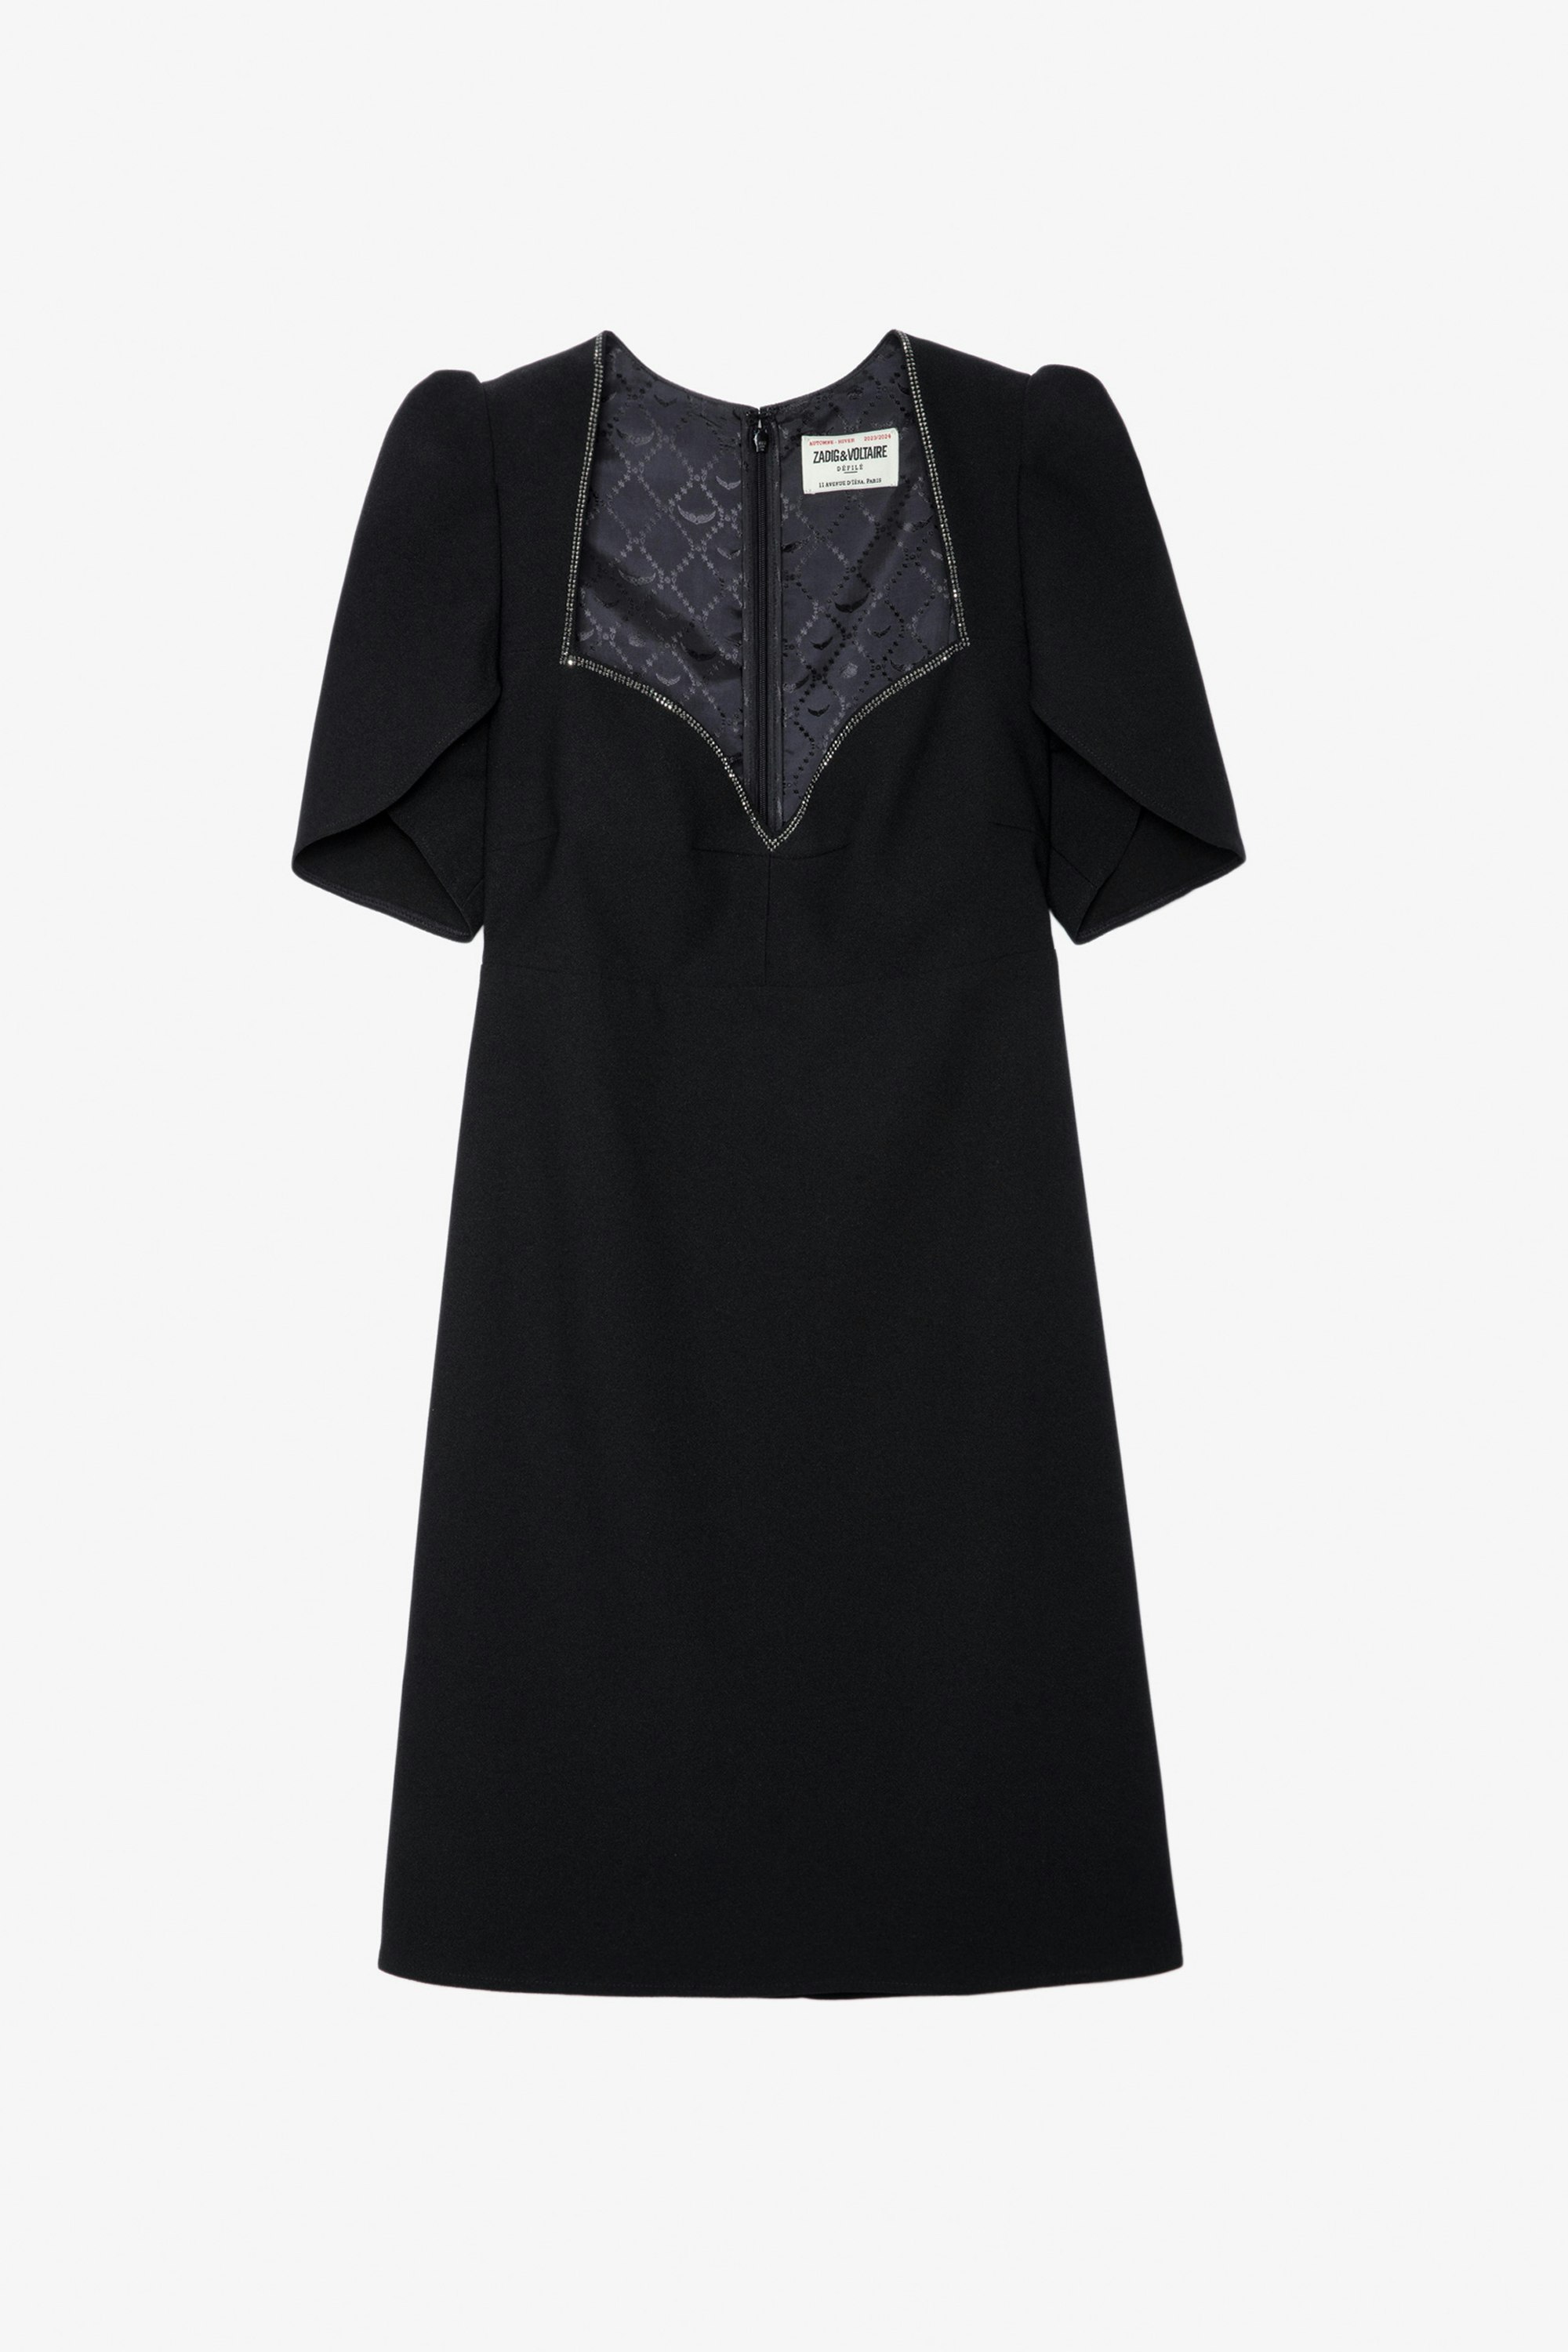 Roxelle Diamanté Dress - Short black crepe dress with diamanté wrap neckline and short asymmetrical sleeves.